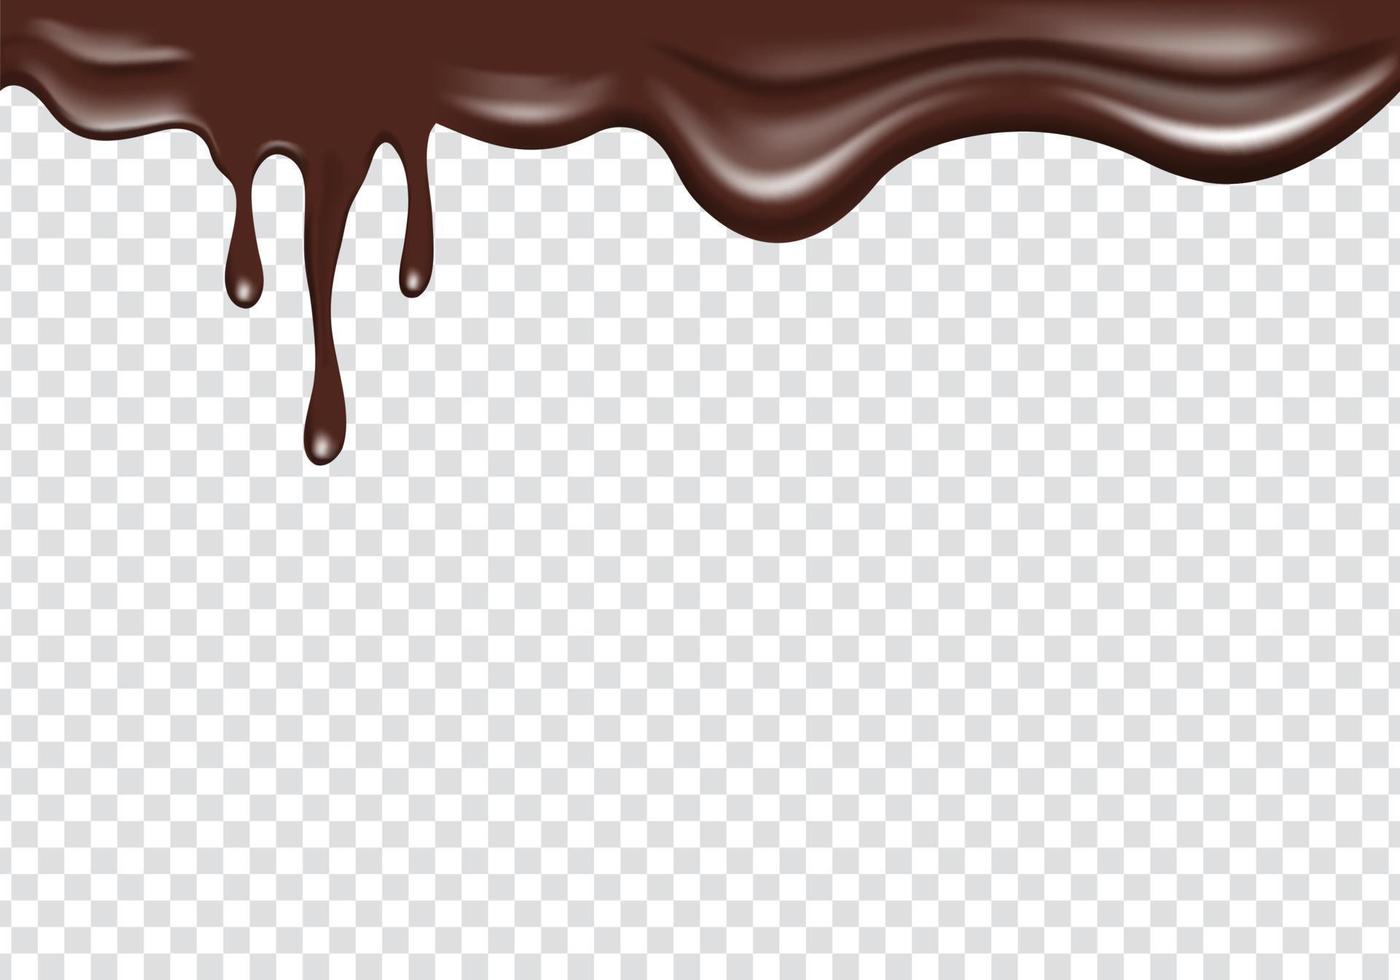 realistische schokoladenflüssigkeit, die sich vom oberen rand ausbreitet. schmelzende tropfendekoration des oberen randrahmens schokolade vektor